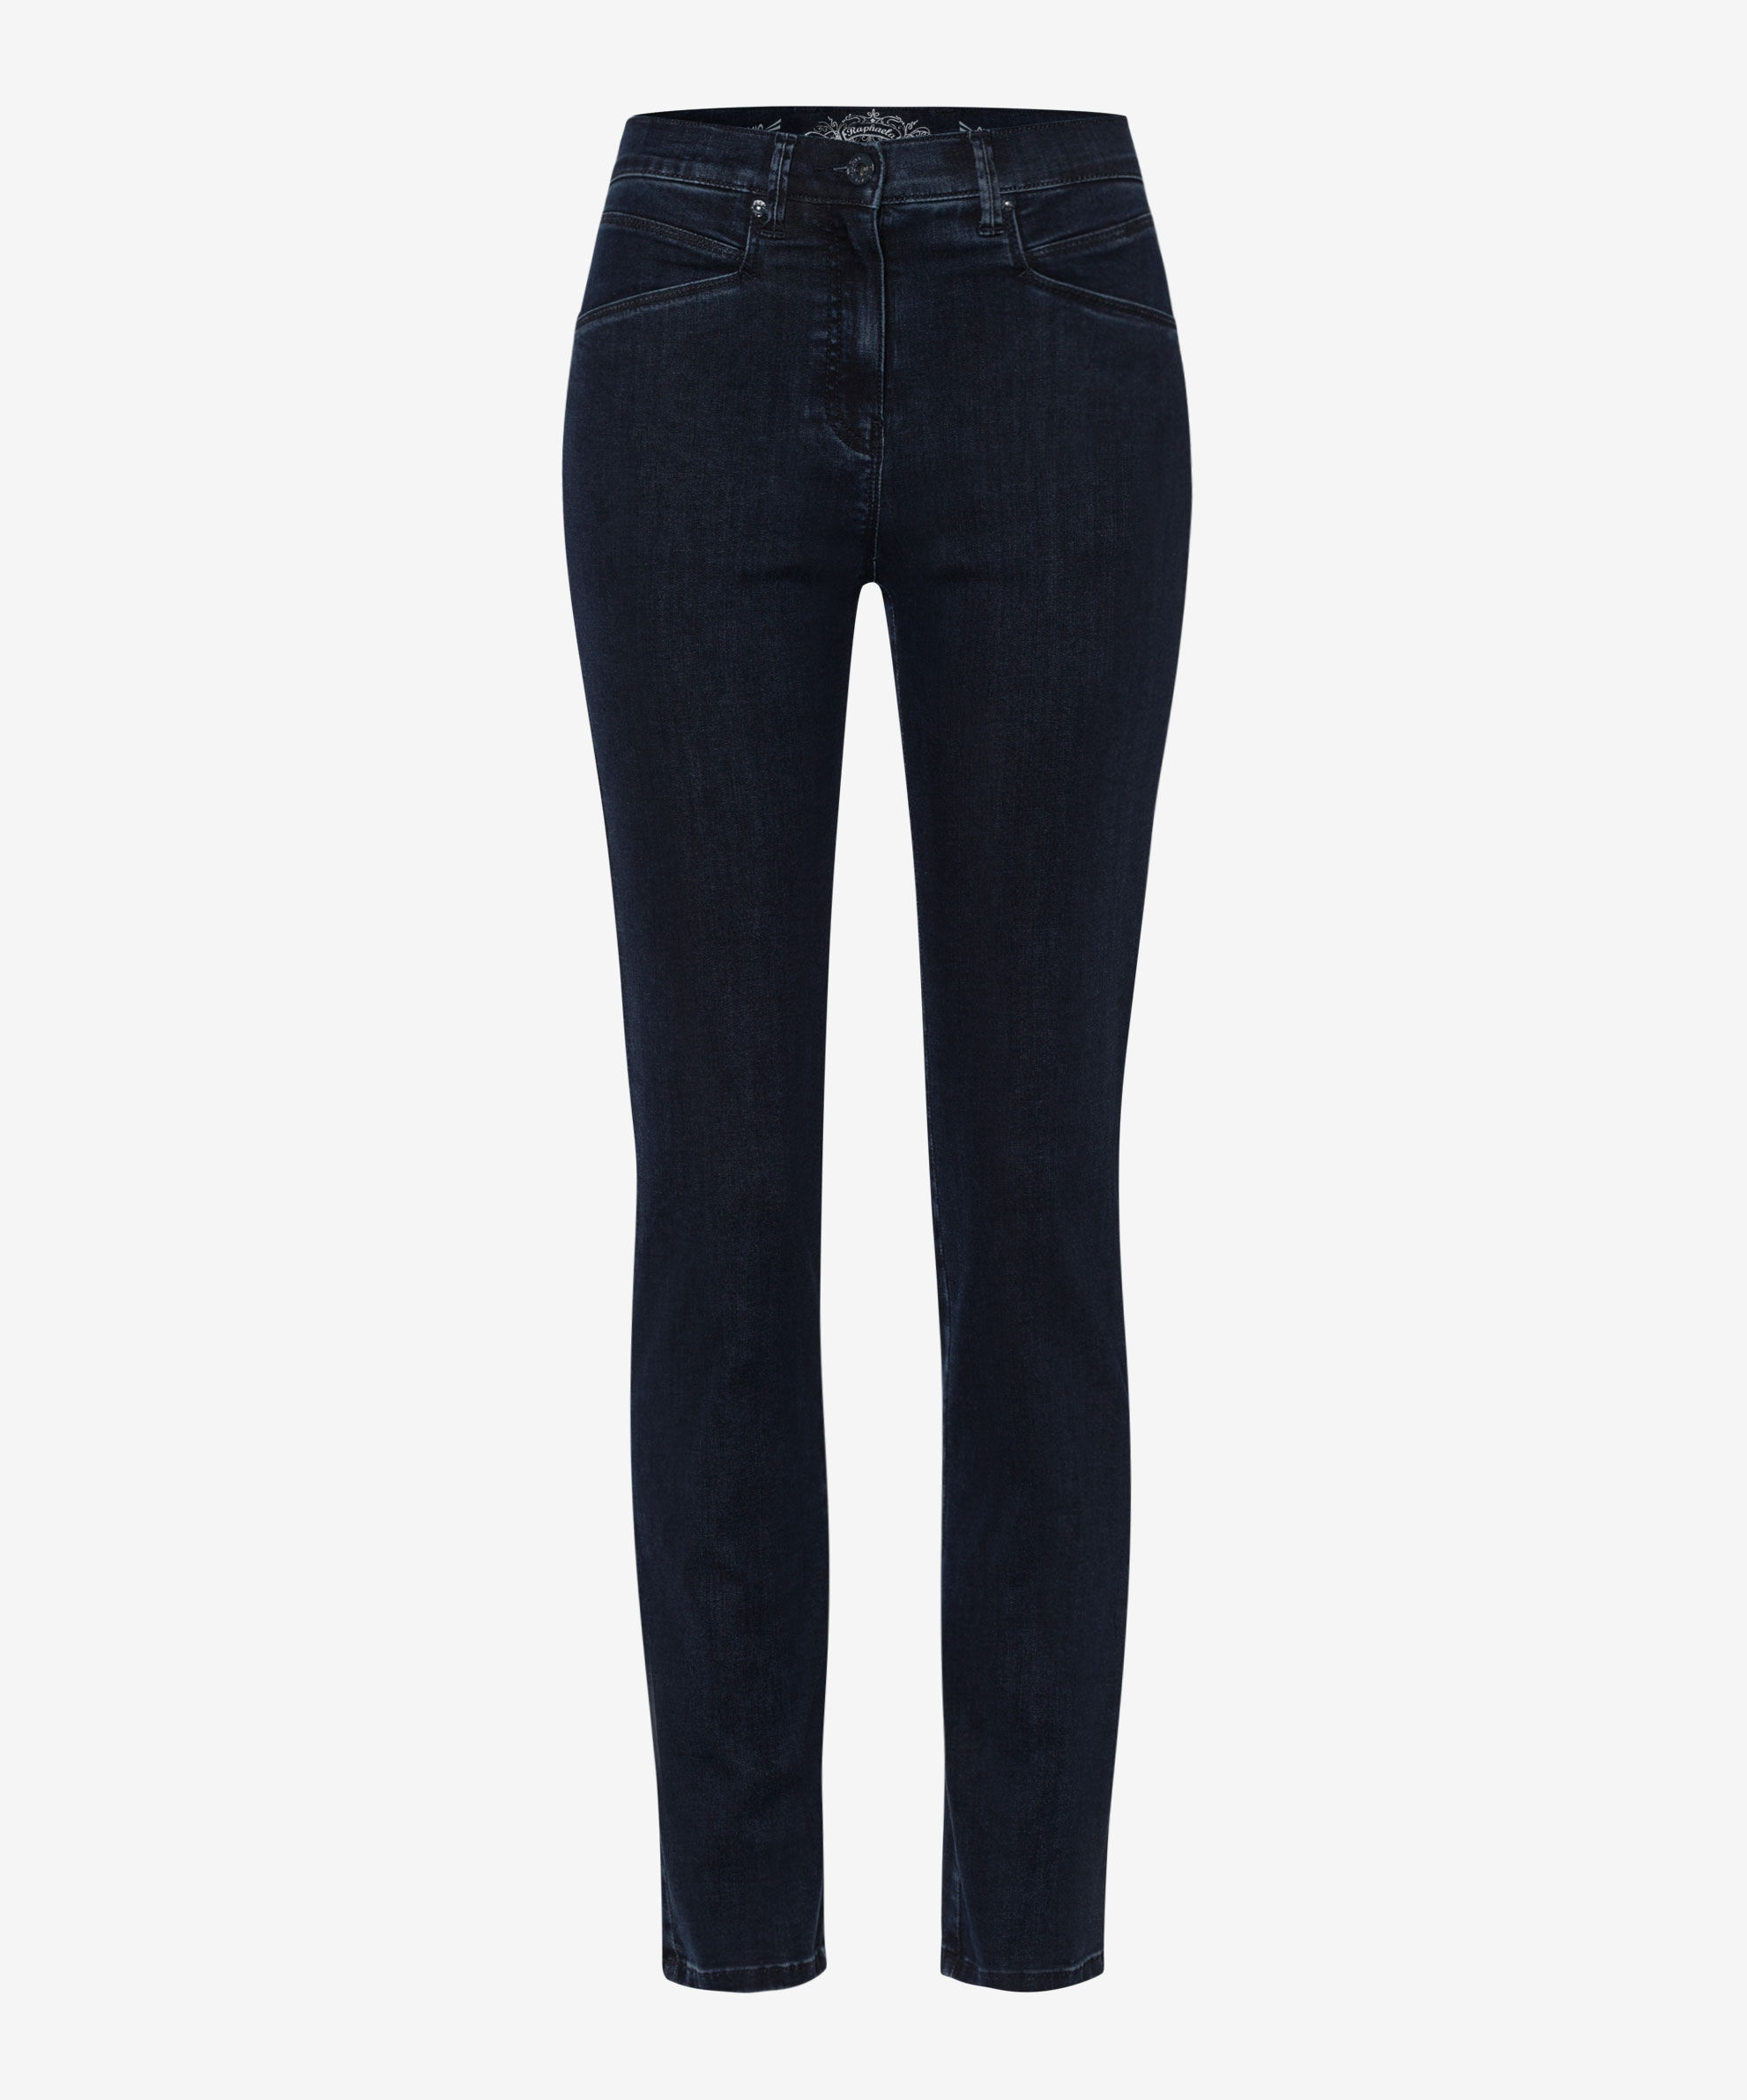 Damen Jeans für Slim shoppen | MITTERMAYR Mode online